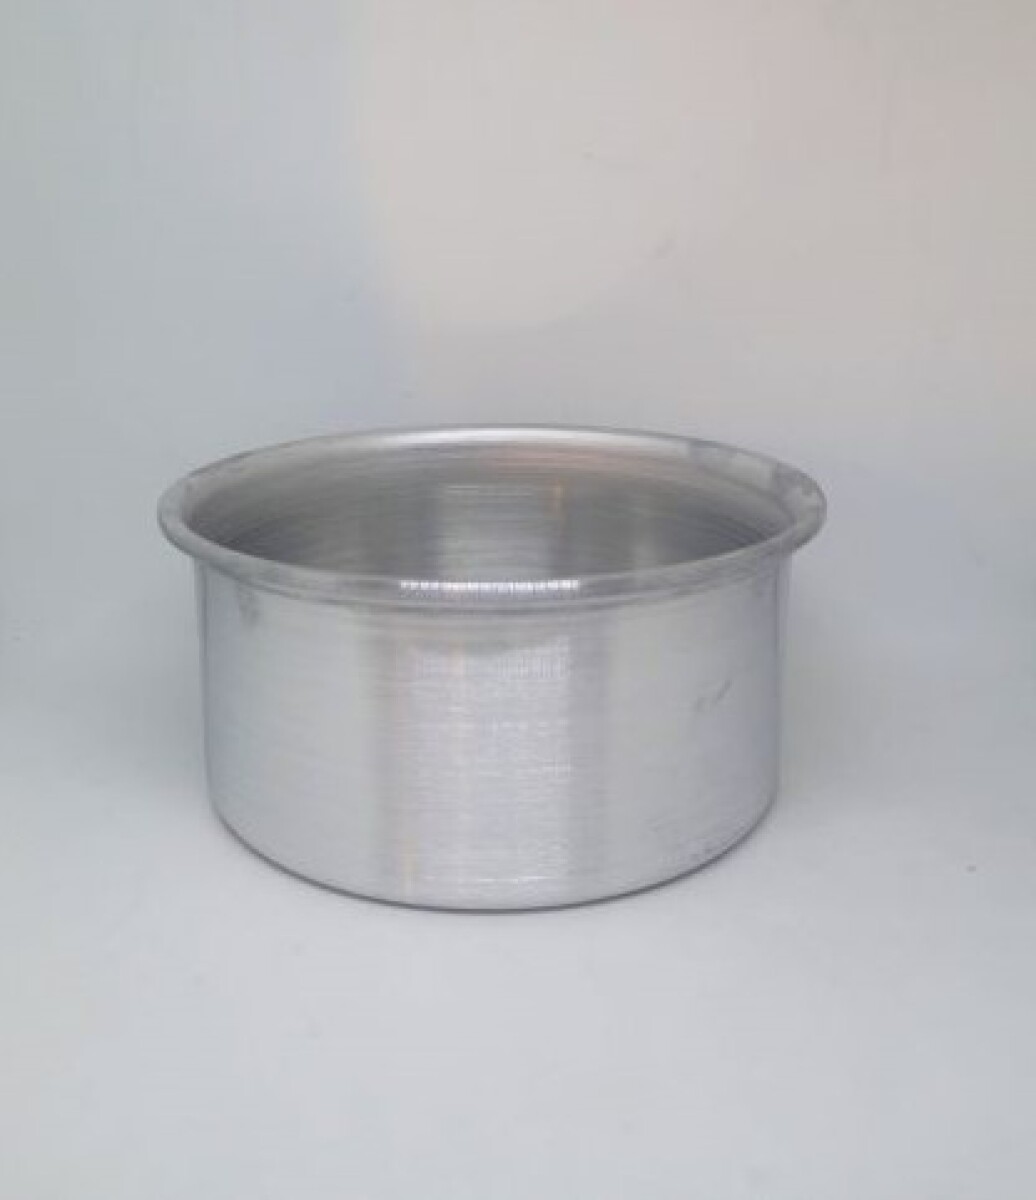 Tortera Alta 12 x 6 cm fondo movil Aluminio - 000 